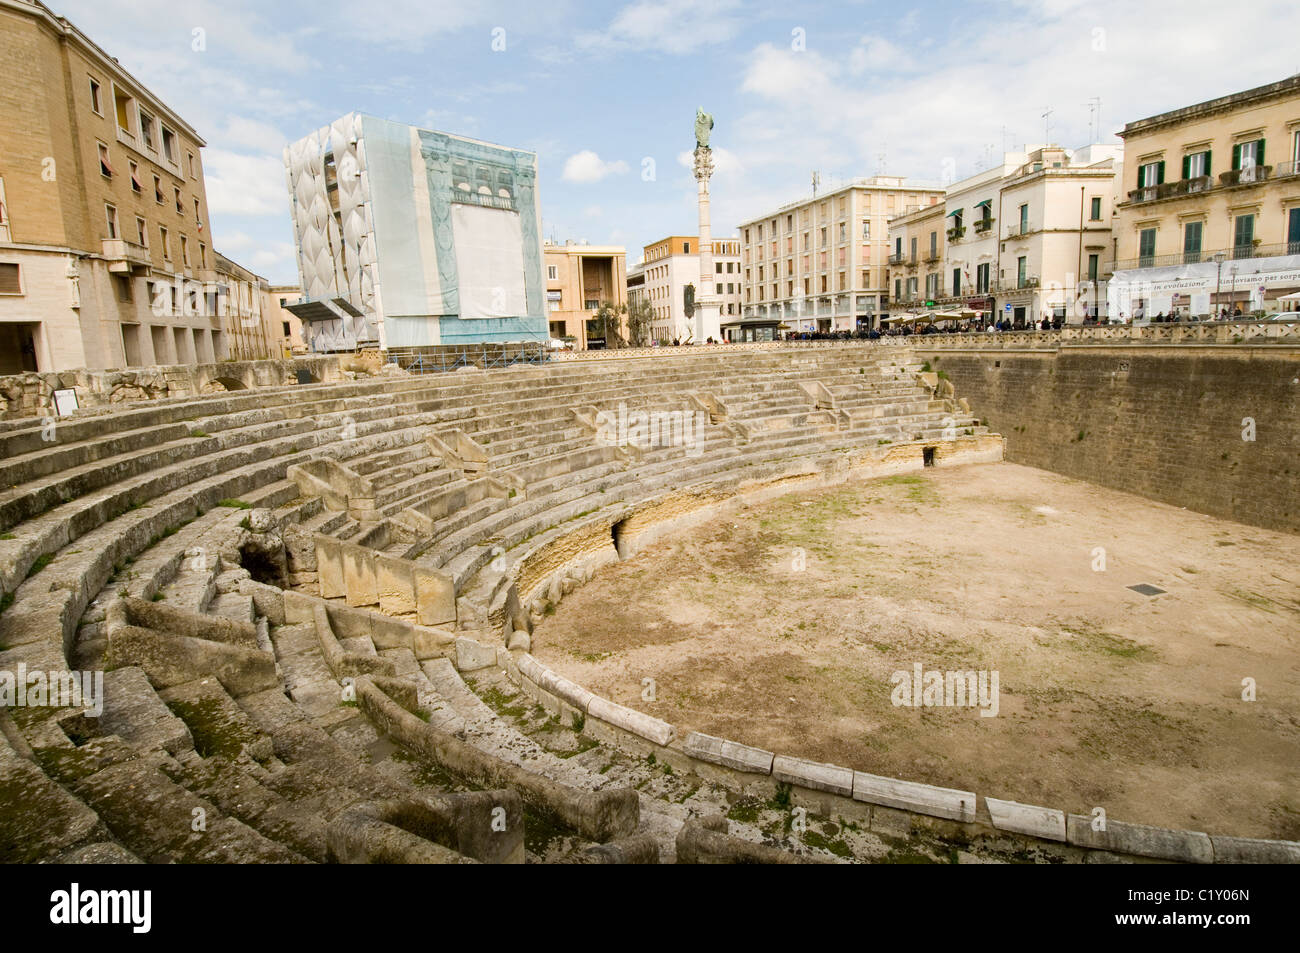 Le sud de l'amphithéâtre de Lecce Italie Ville cite la Piazza Sant'Oronzo romains demeure l'histoire de l'italie voyage touristique historique t Banque D'Images